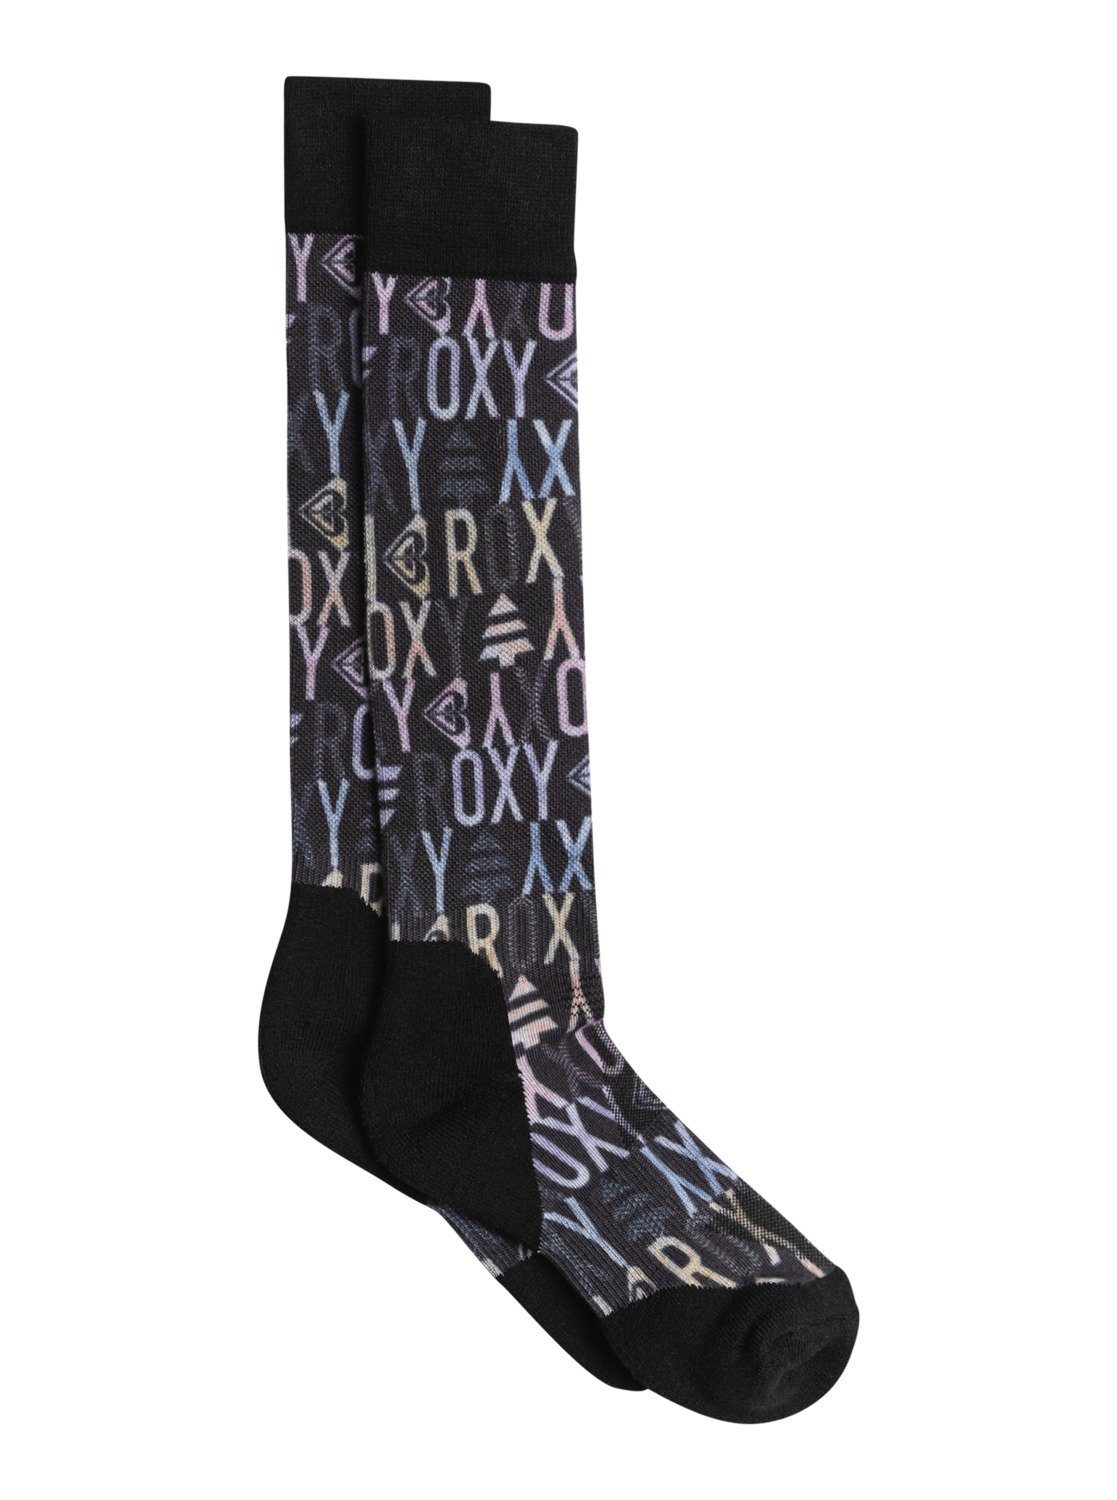 Roxy Skisocken Sapin Black Paloma Socks True